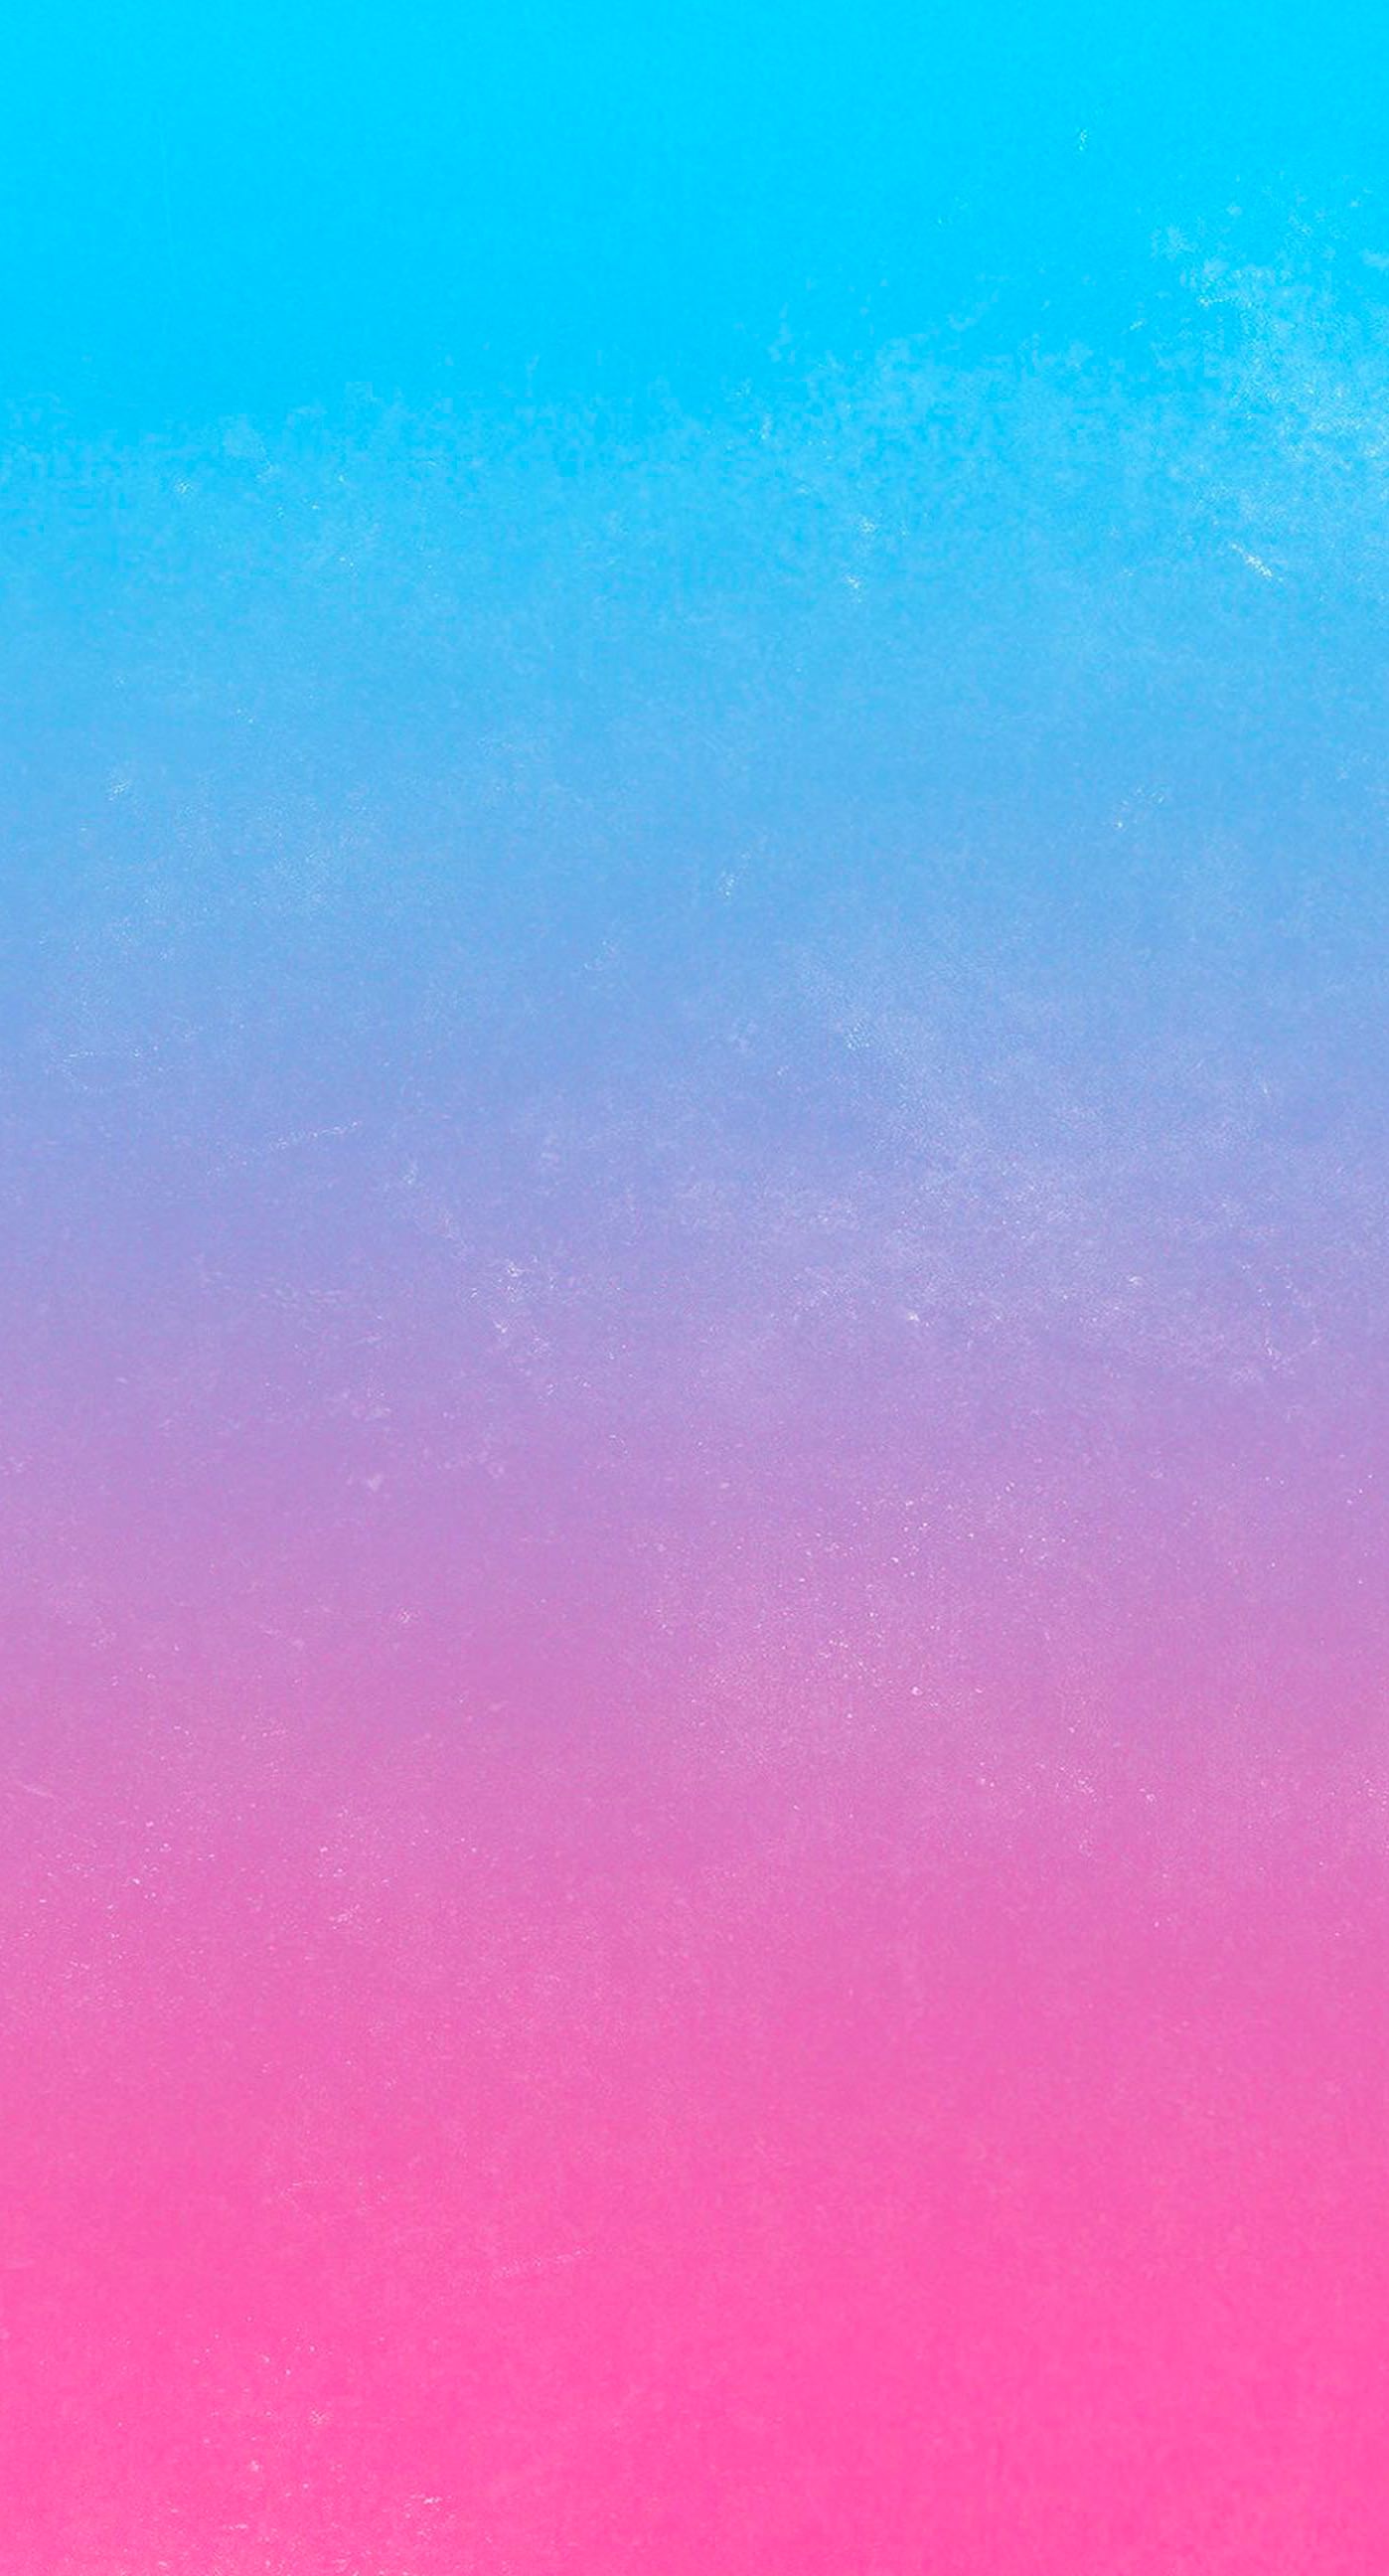 그라디언트 아이폰 배경 화면,푸른,분홍,하늘,빨간,터키 옥